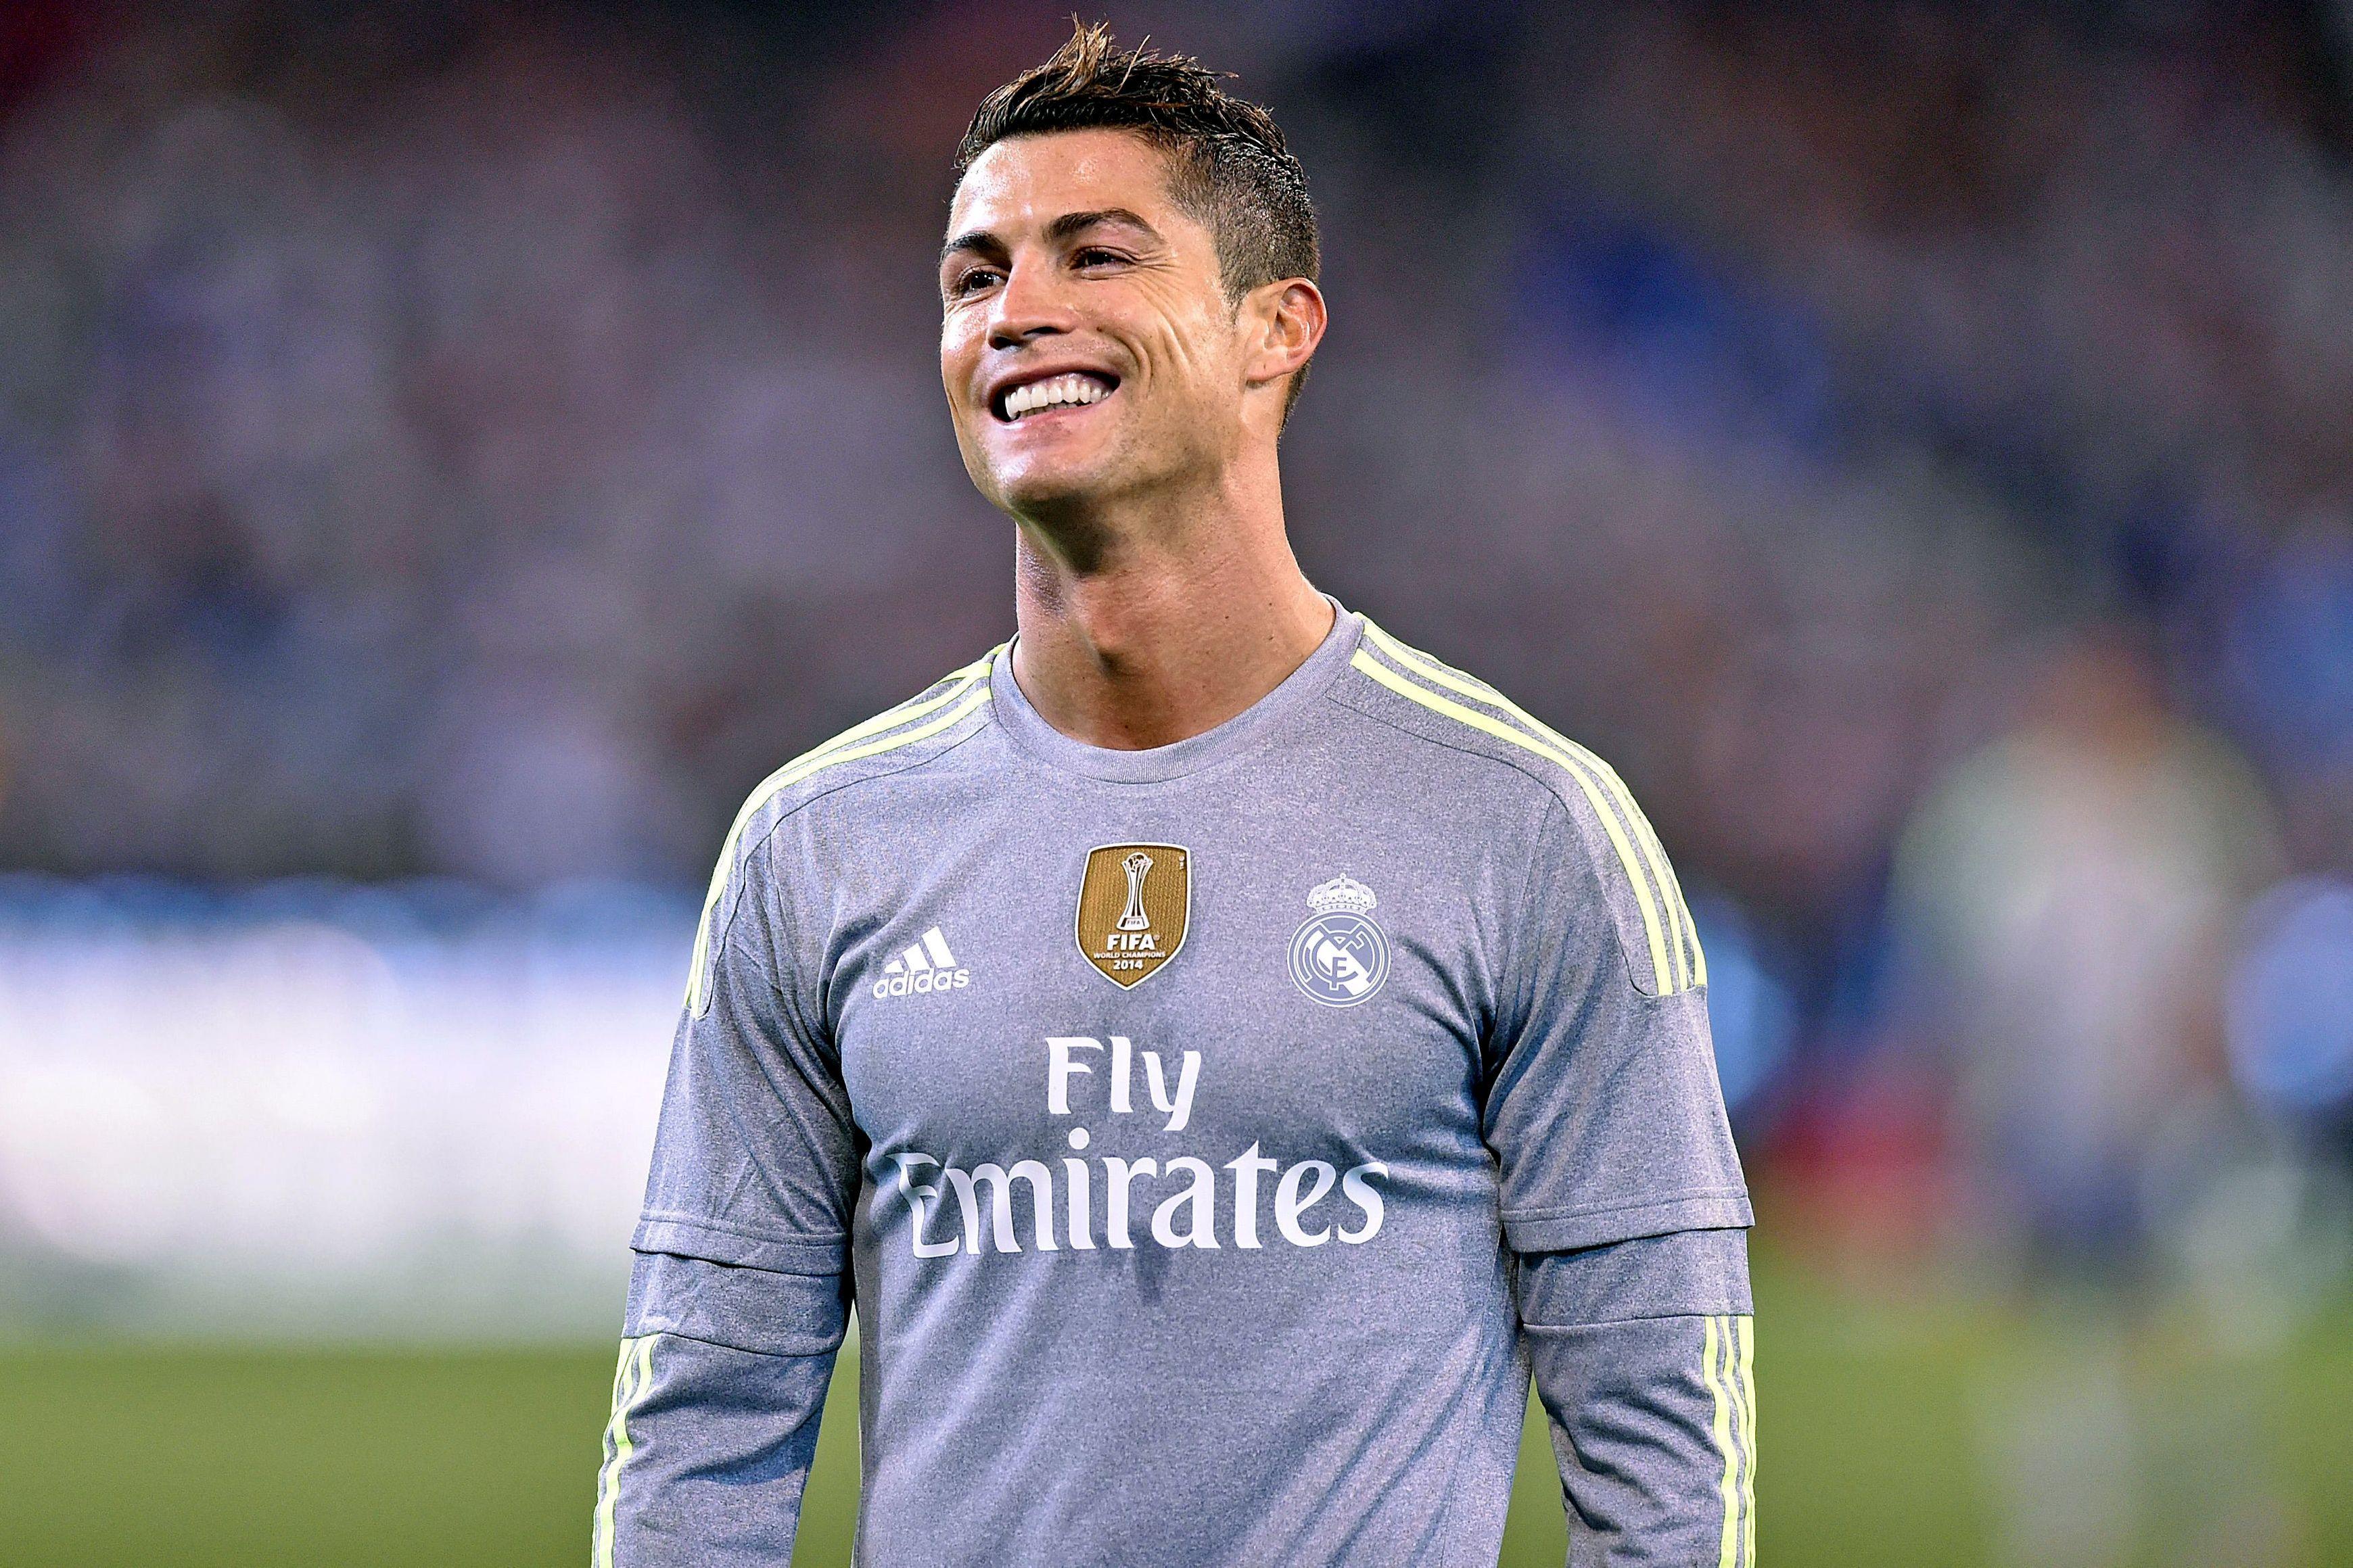 Download Free HD 1080p Wallpaper of Cristiano Ronaldo